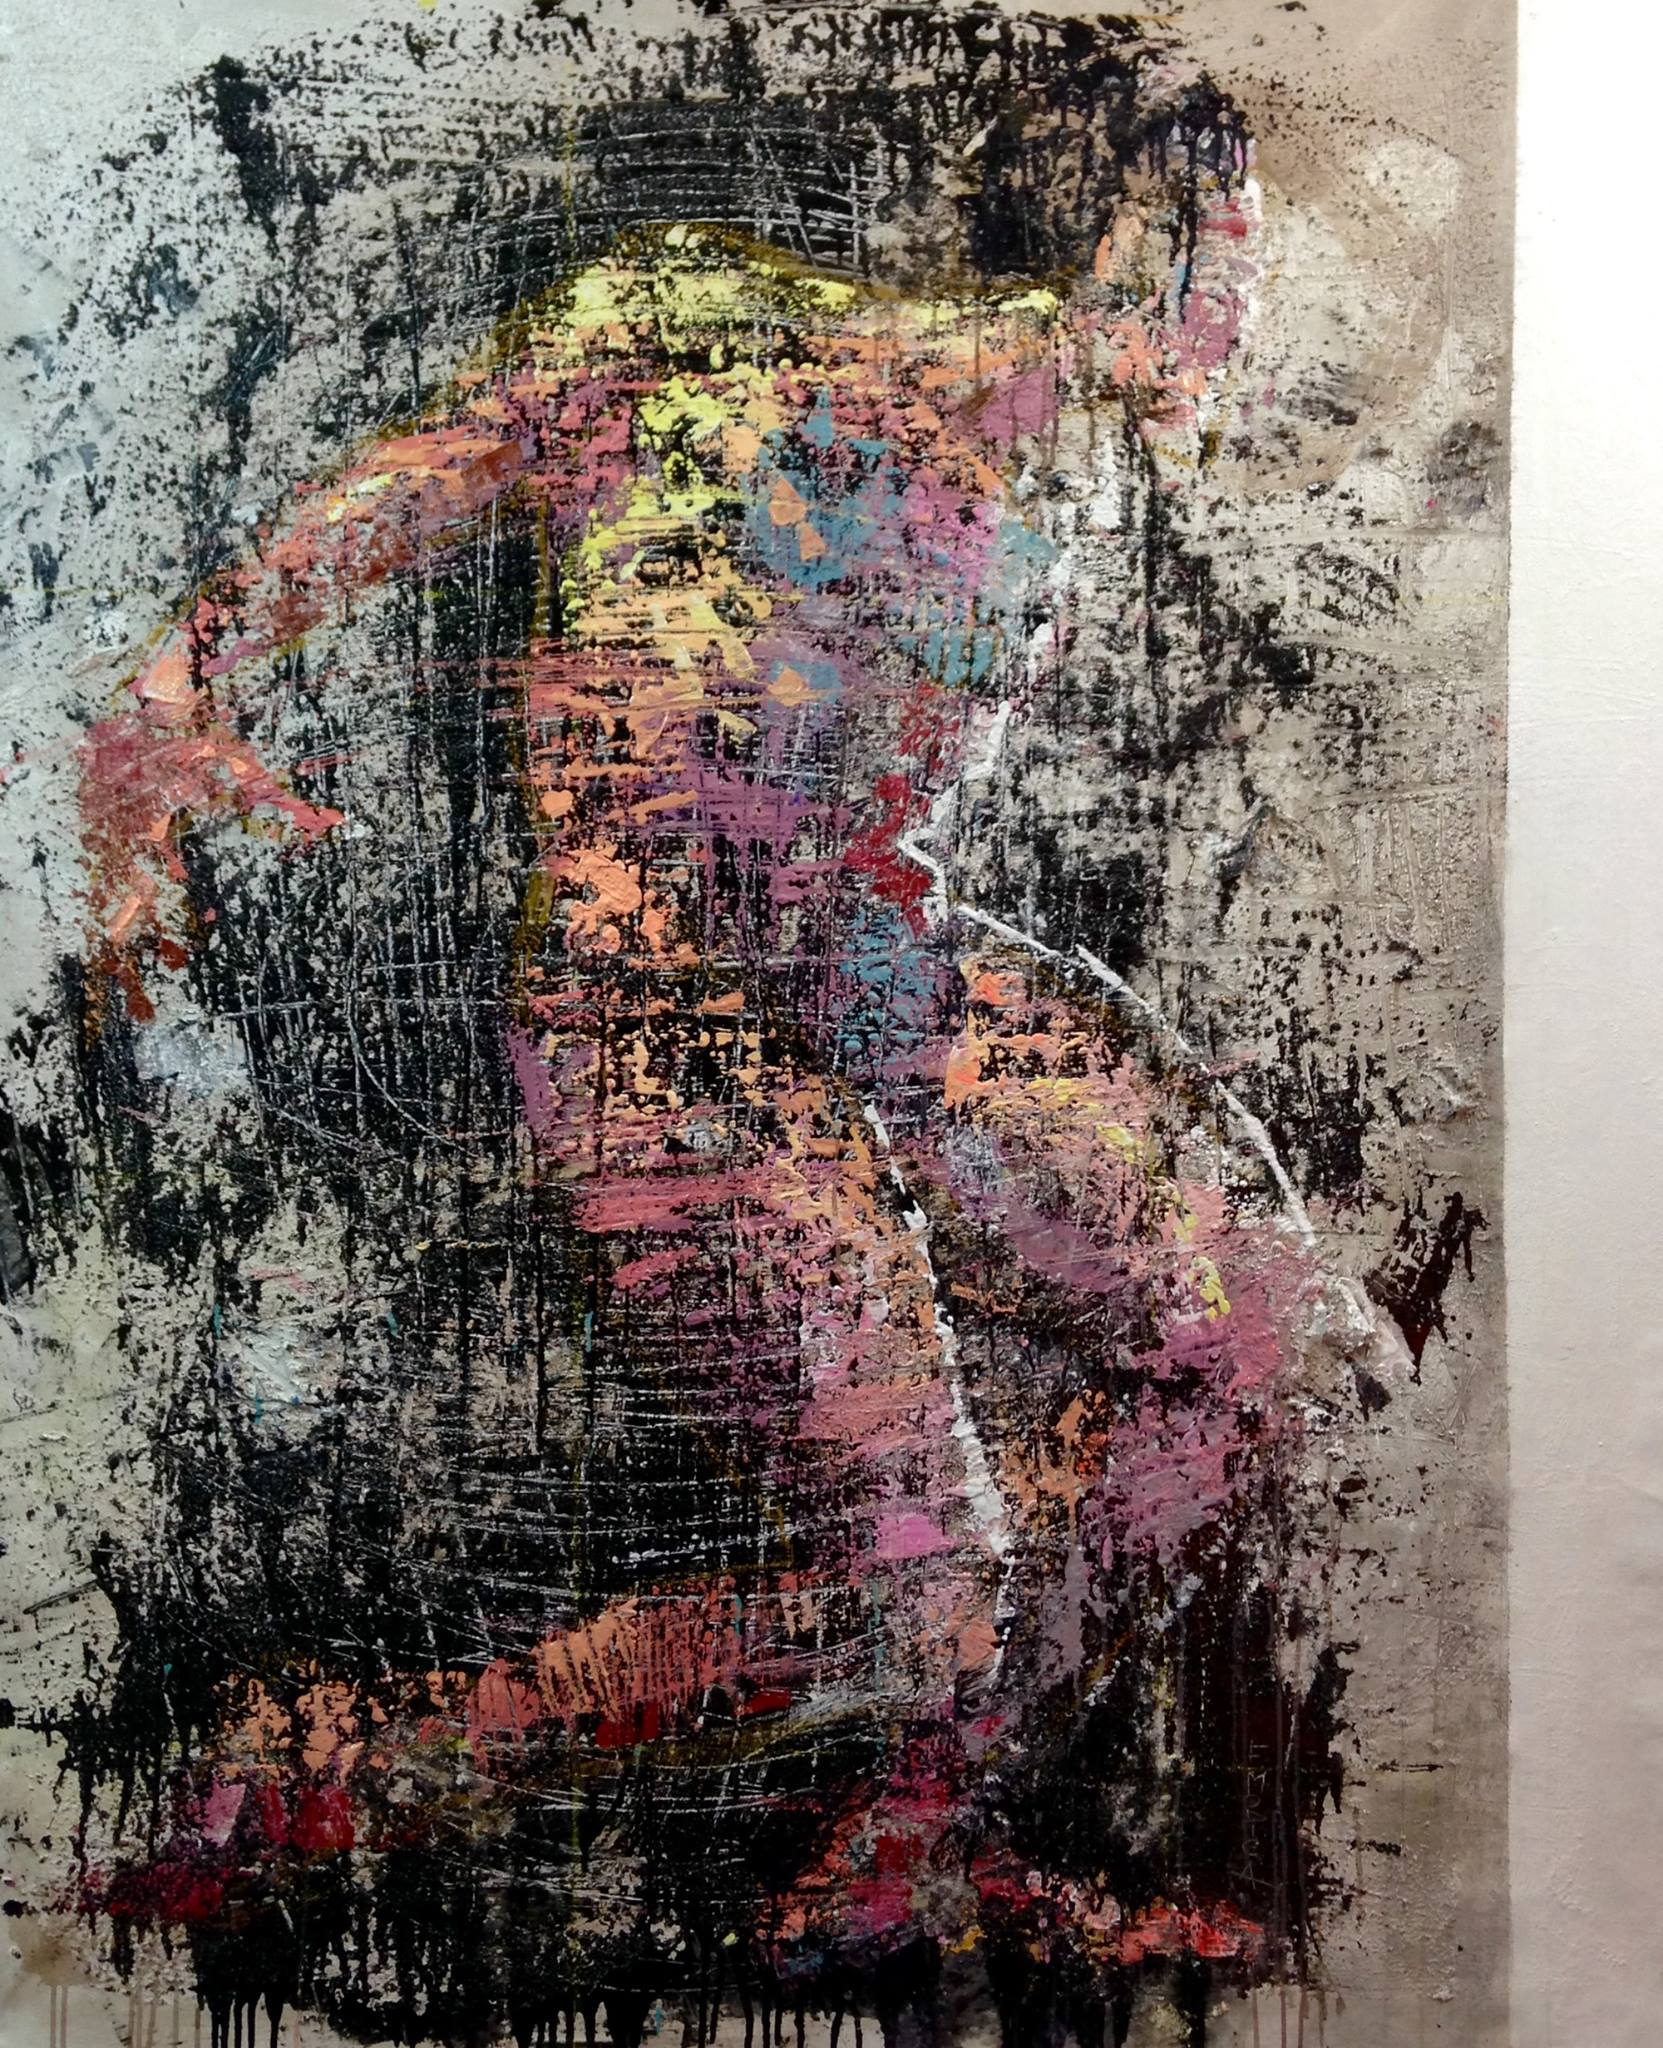 Eviternity - cm 150x180 | 59'x71' - mixed media on canvas - 2017